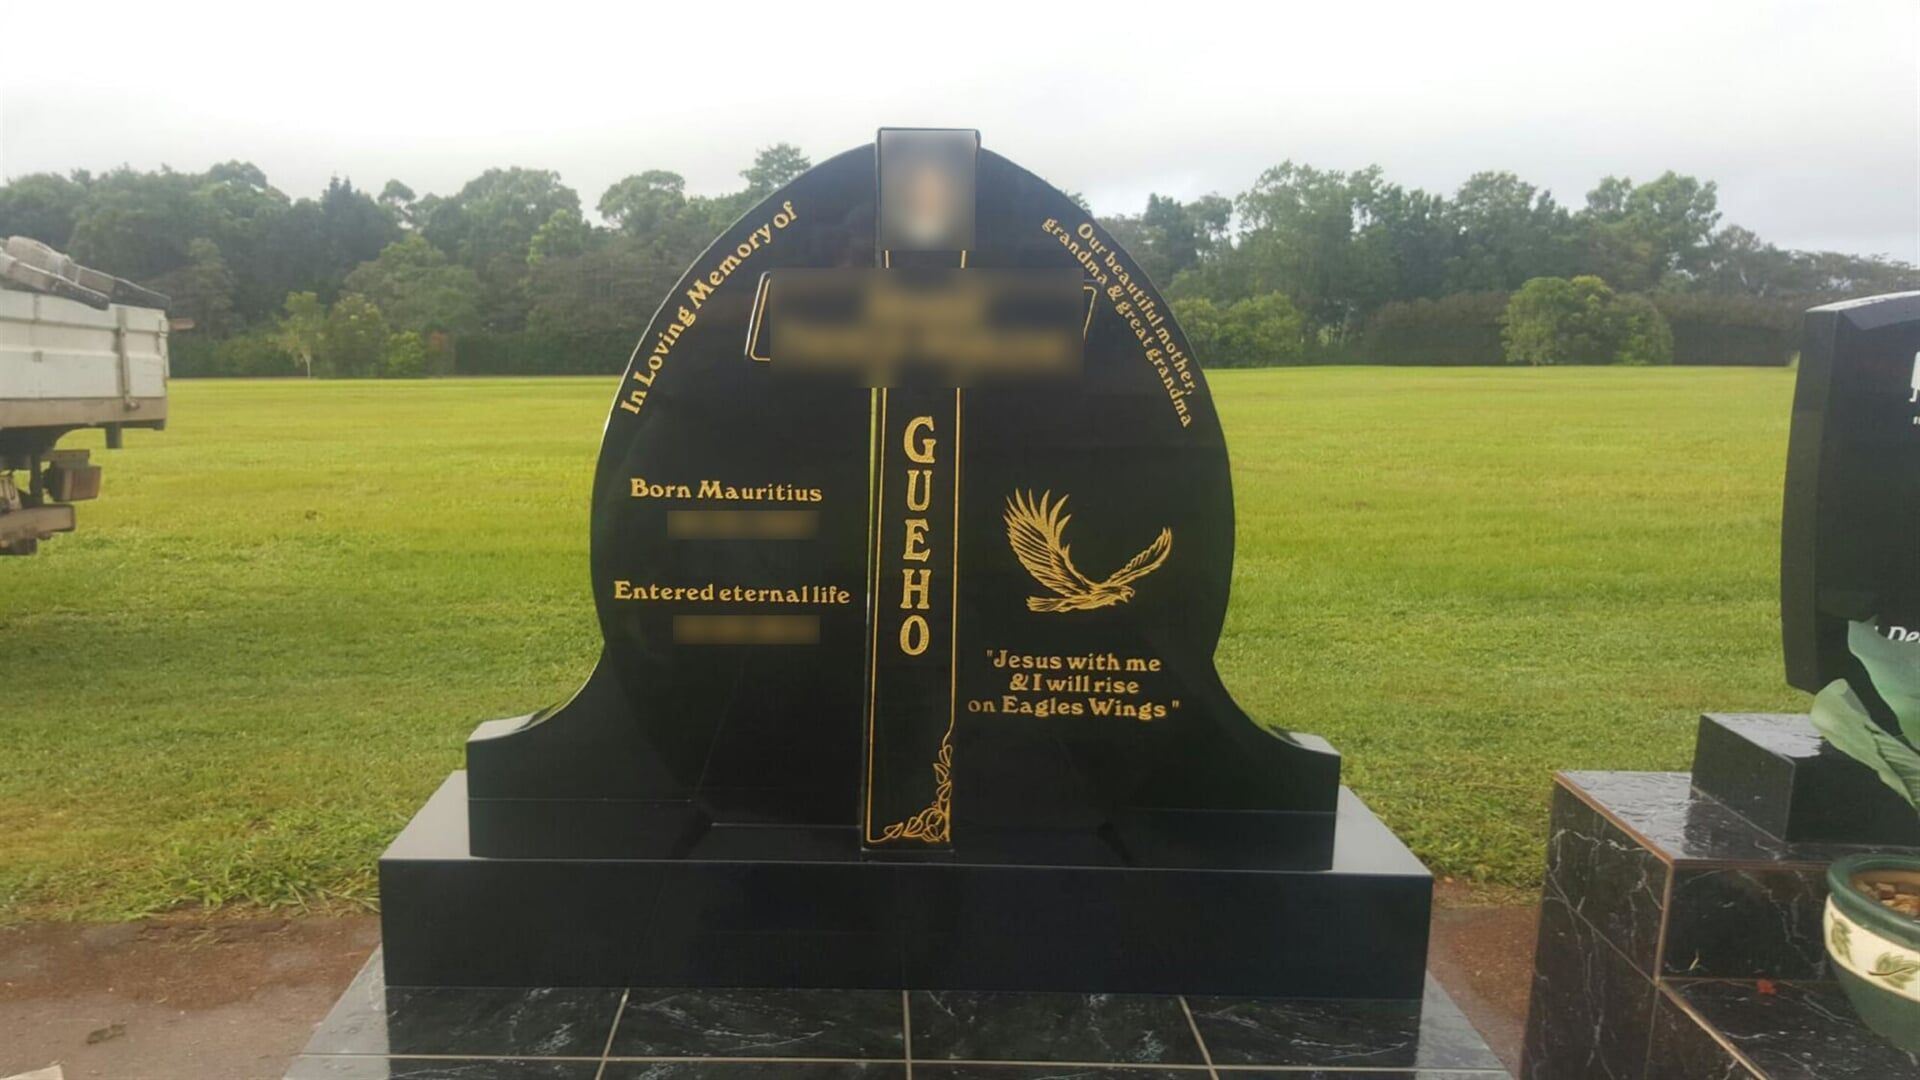 Headstone — De Lai Monumental & Granite in Atherton, QLD